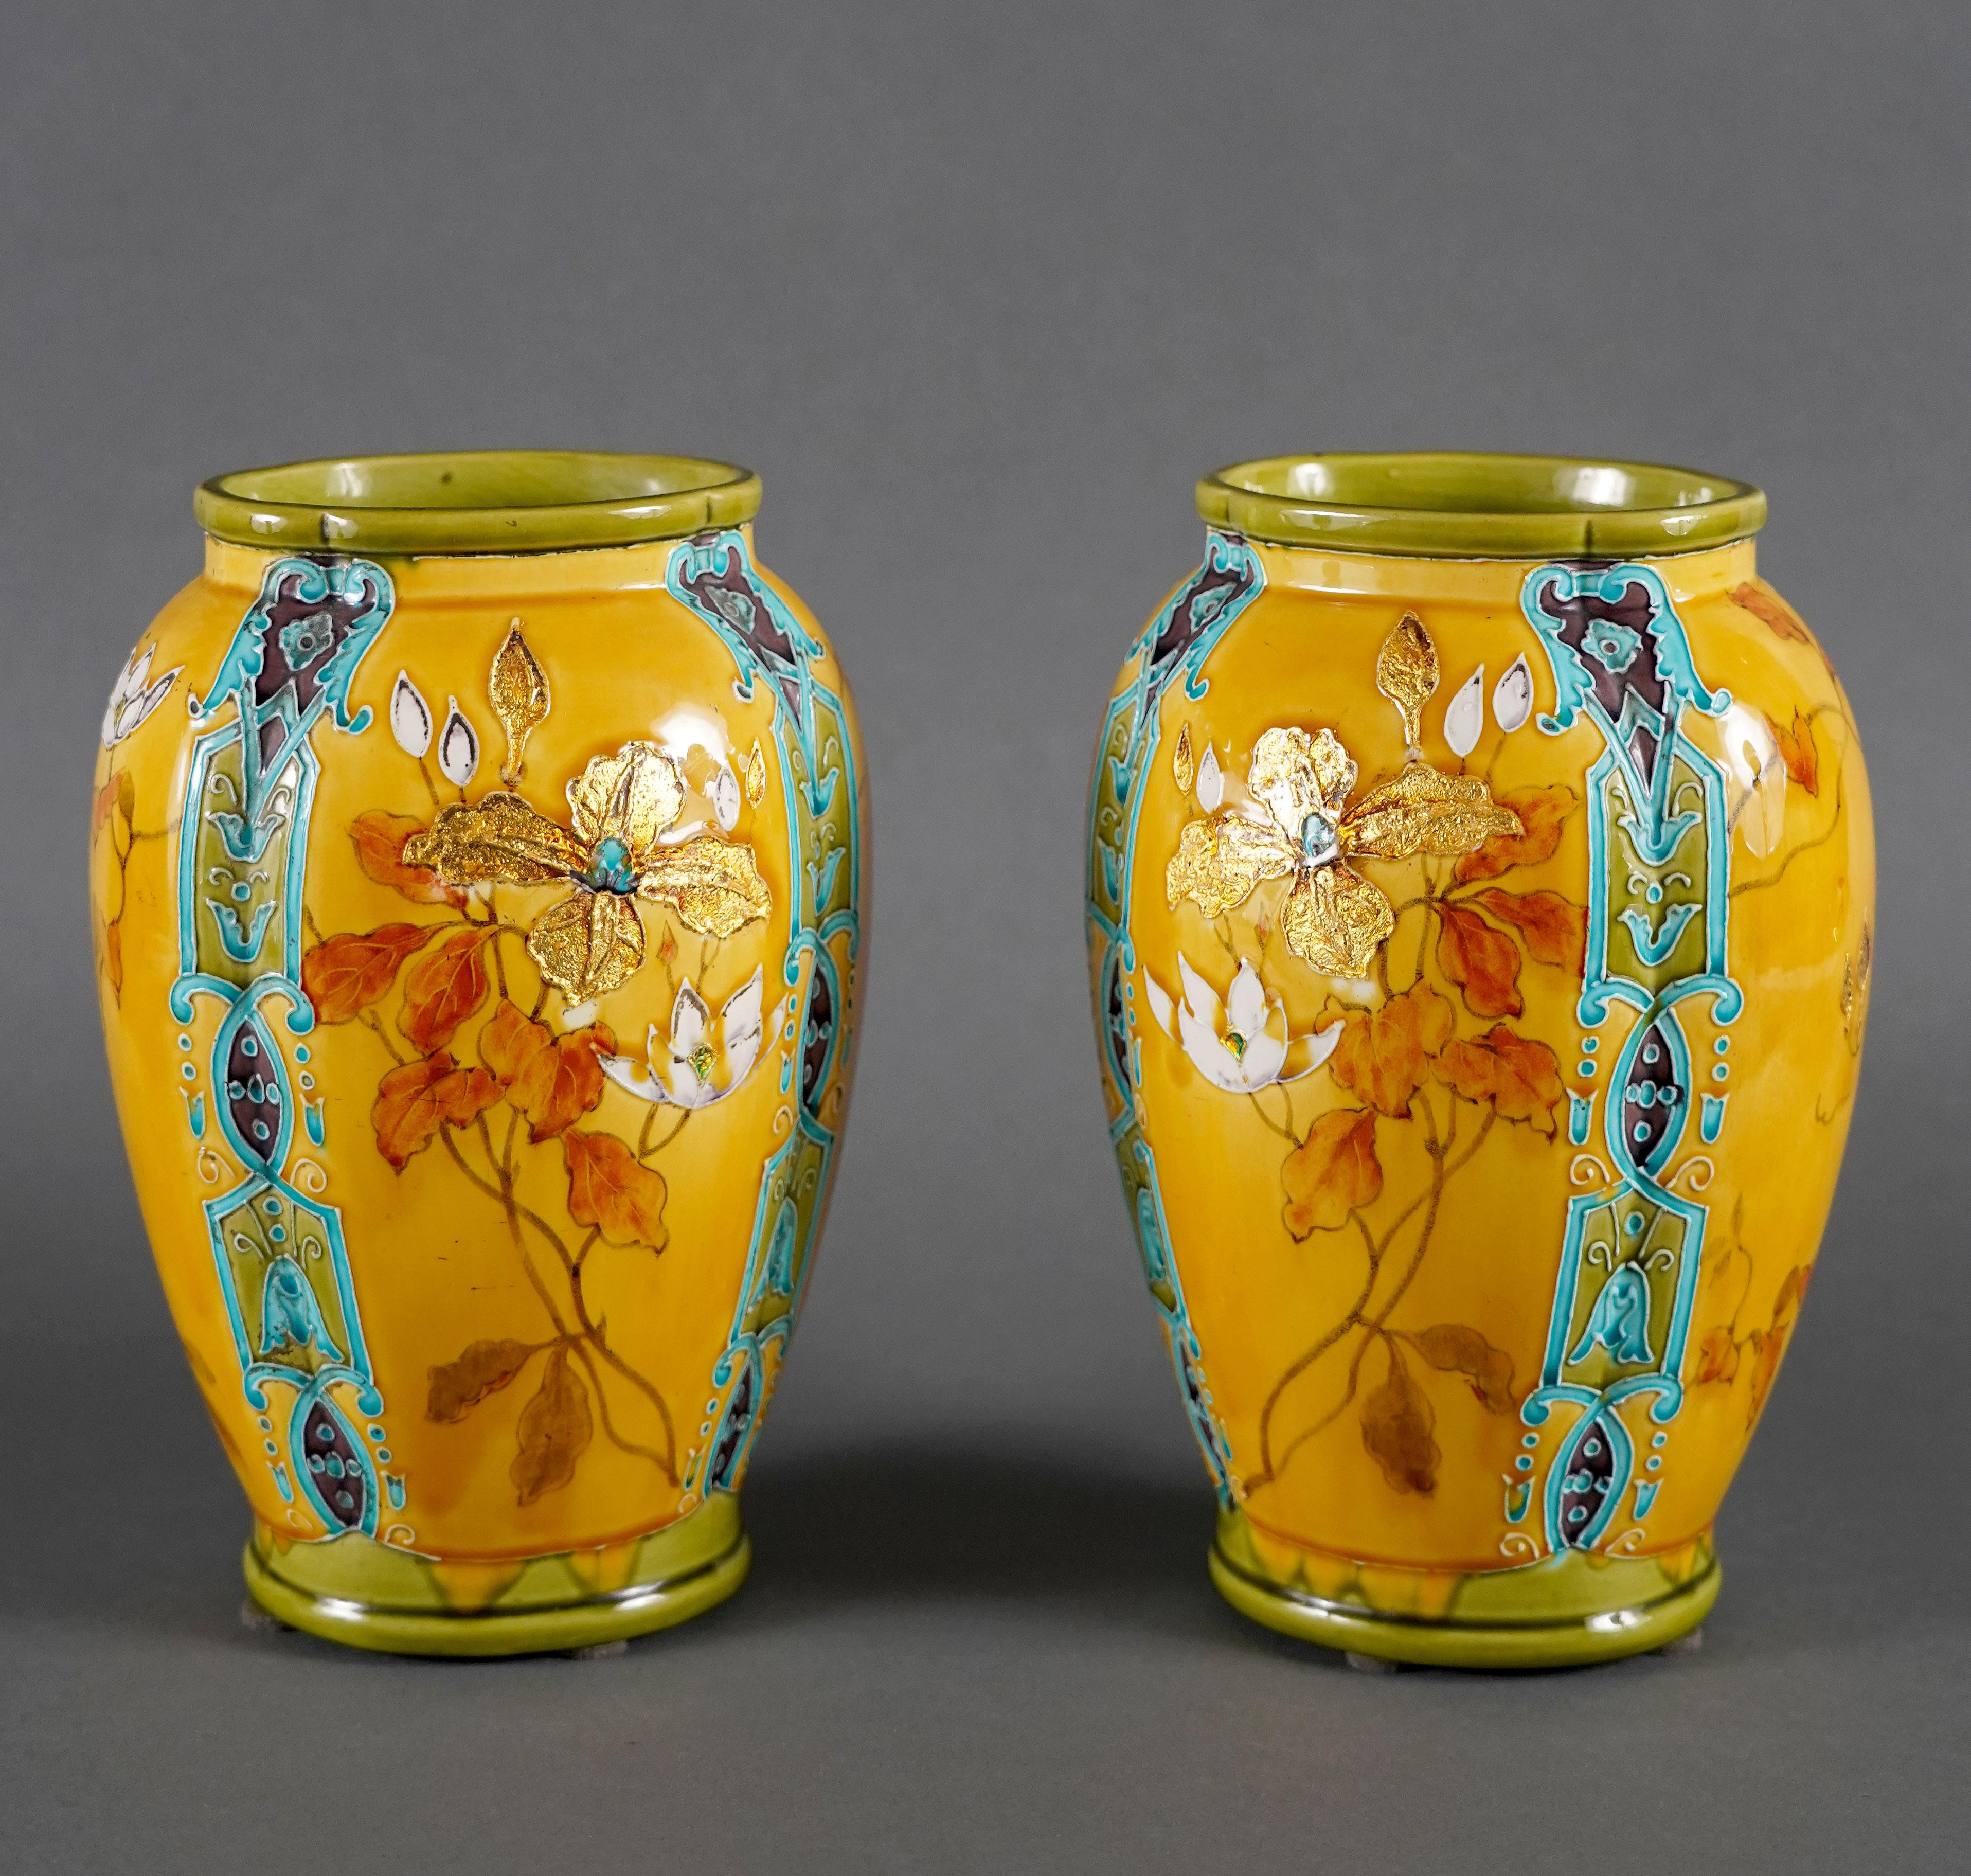 
Charmante paire de vases en faïence polychrome avec entrelacs de feuilles d'or, technique dont Théodore Deck s'était fait une spécialité.
Ces vases de forme oblongue sont décorés de chaque côté de bouquets d'iris et de cyclamens sur un fond